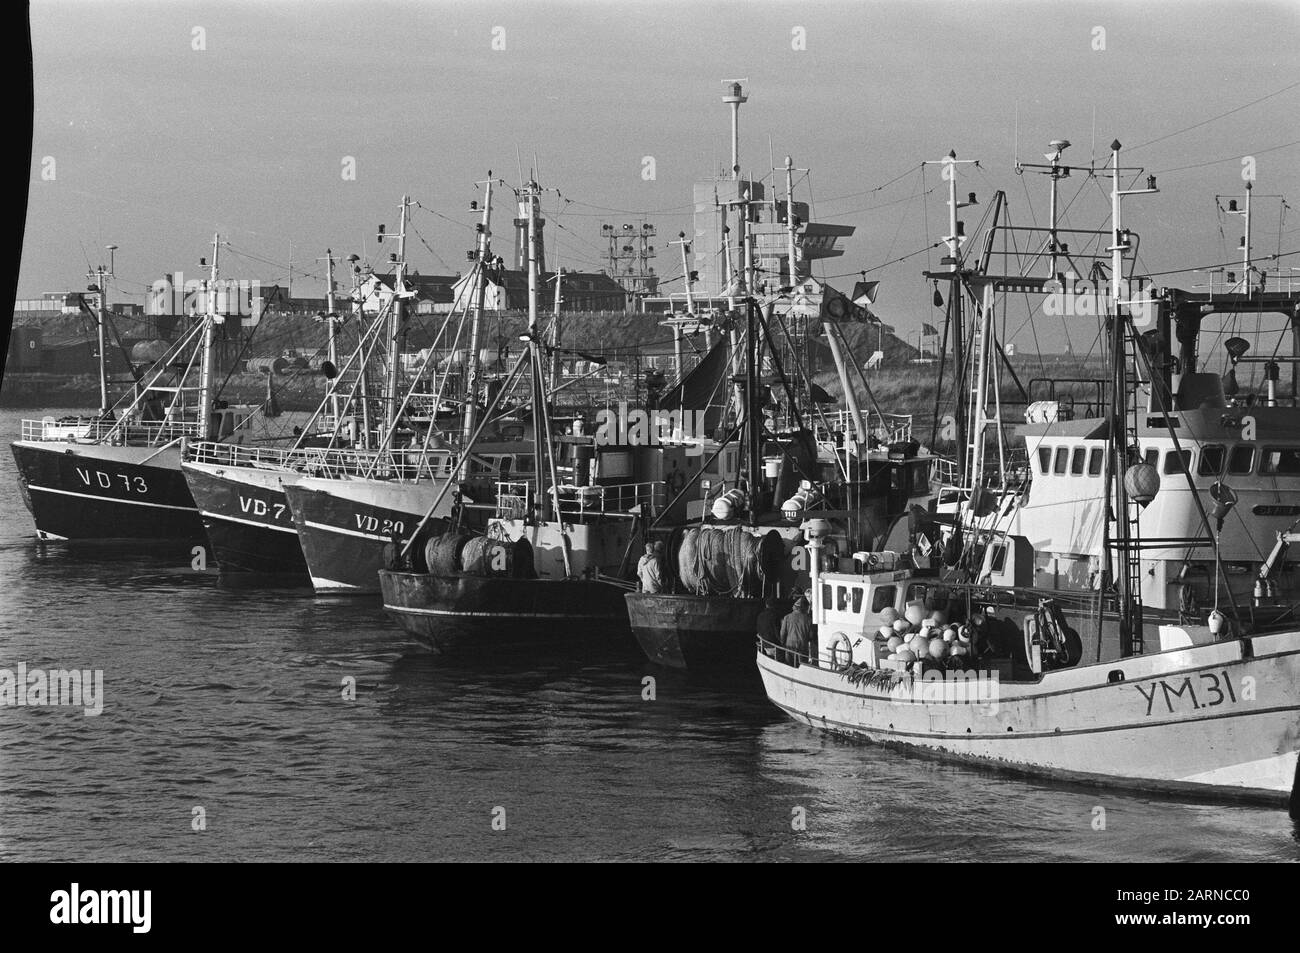 Les pêcheurs bloquent les ports de Lauwersooog et d'IJmuiden pour protester contre l'interdiction de la pêche à la morue Date : 3 décembre 1984 lieu : IJmuiden mots clés : ports, protestations, pêcheurs Banque D'Images